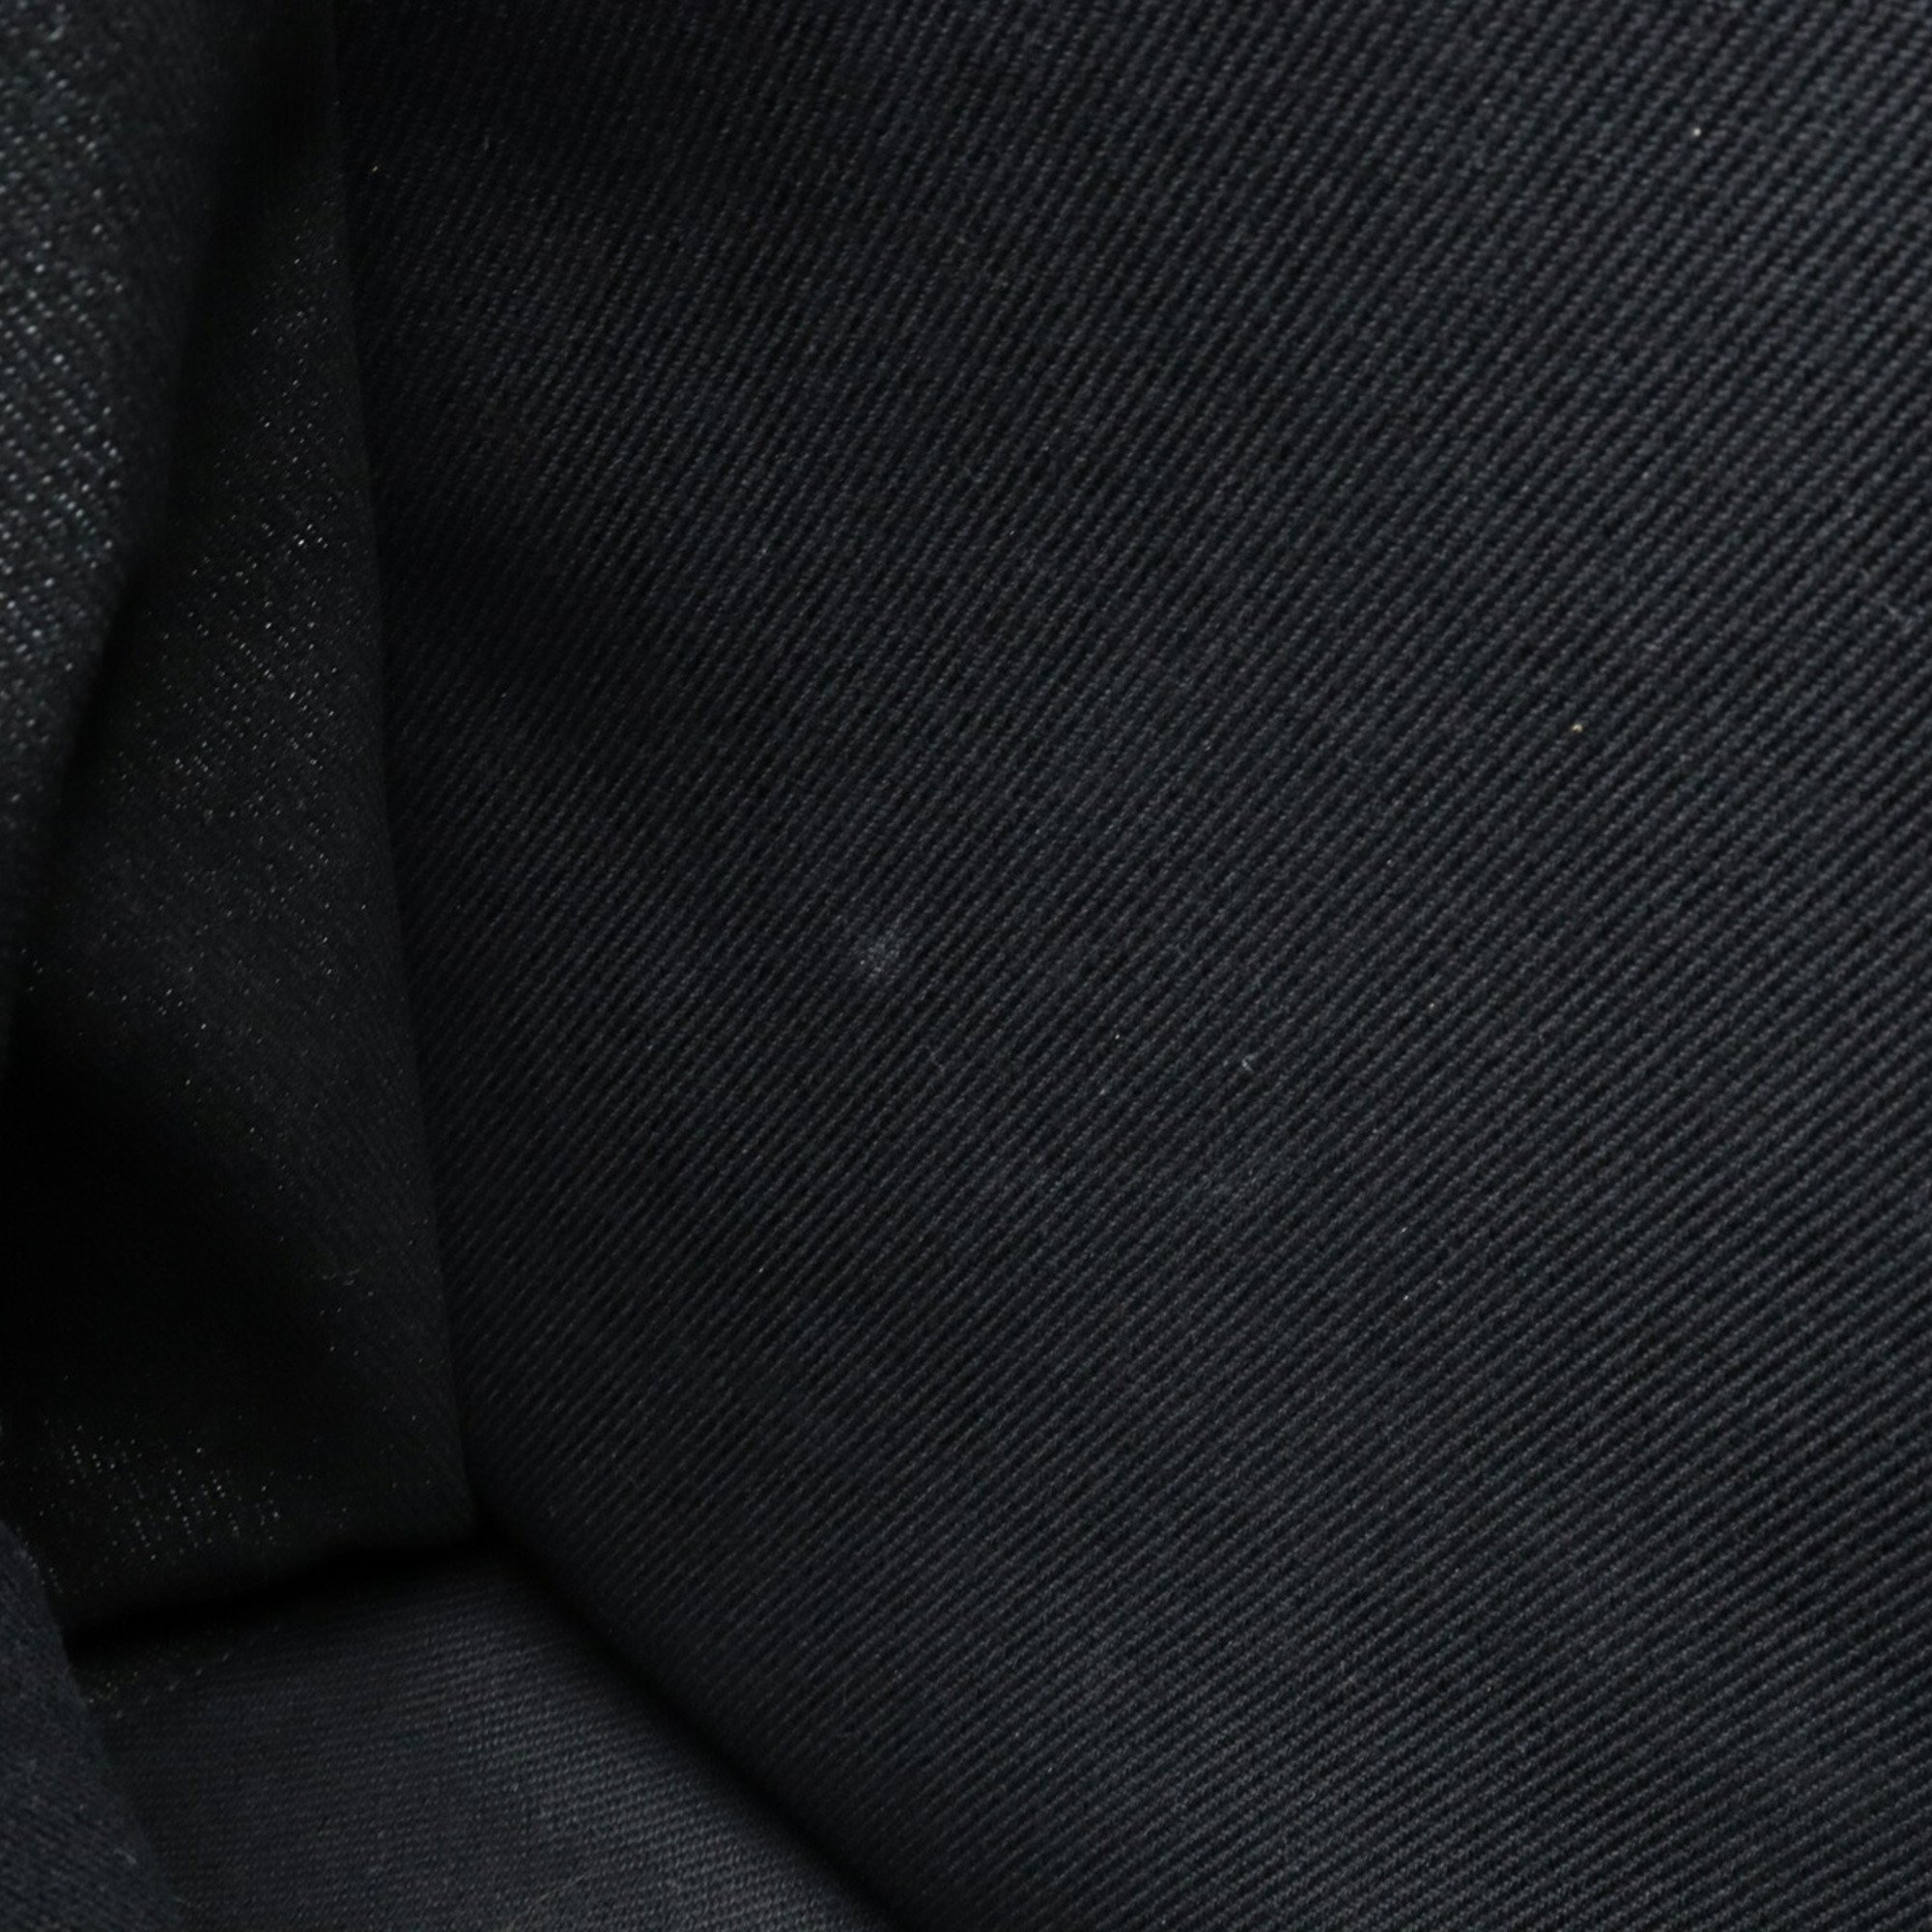 SAINT LAURENT PARIS YSL Yves Saint Laurent RIVE GAUCHE Tote Bag Canvas Leather Black 631382